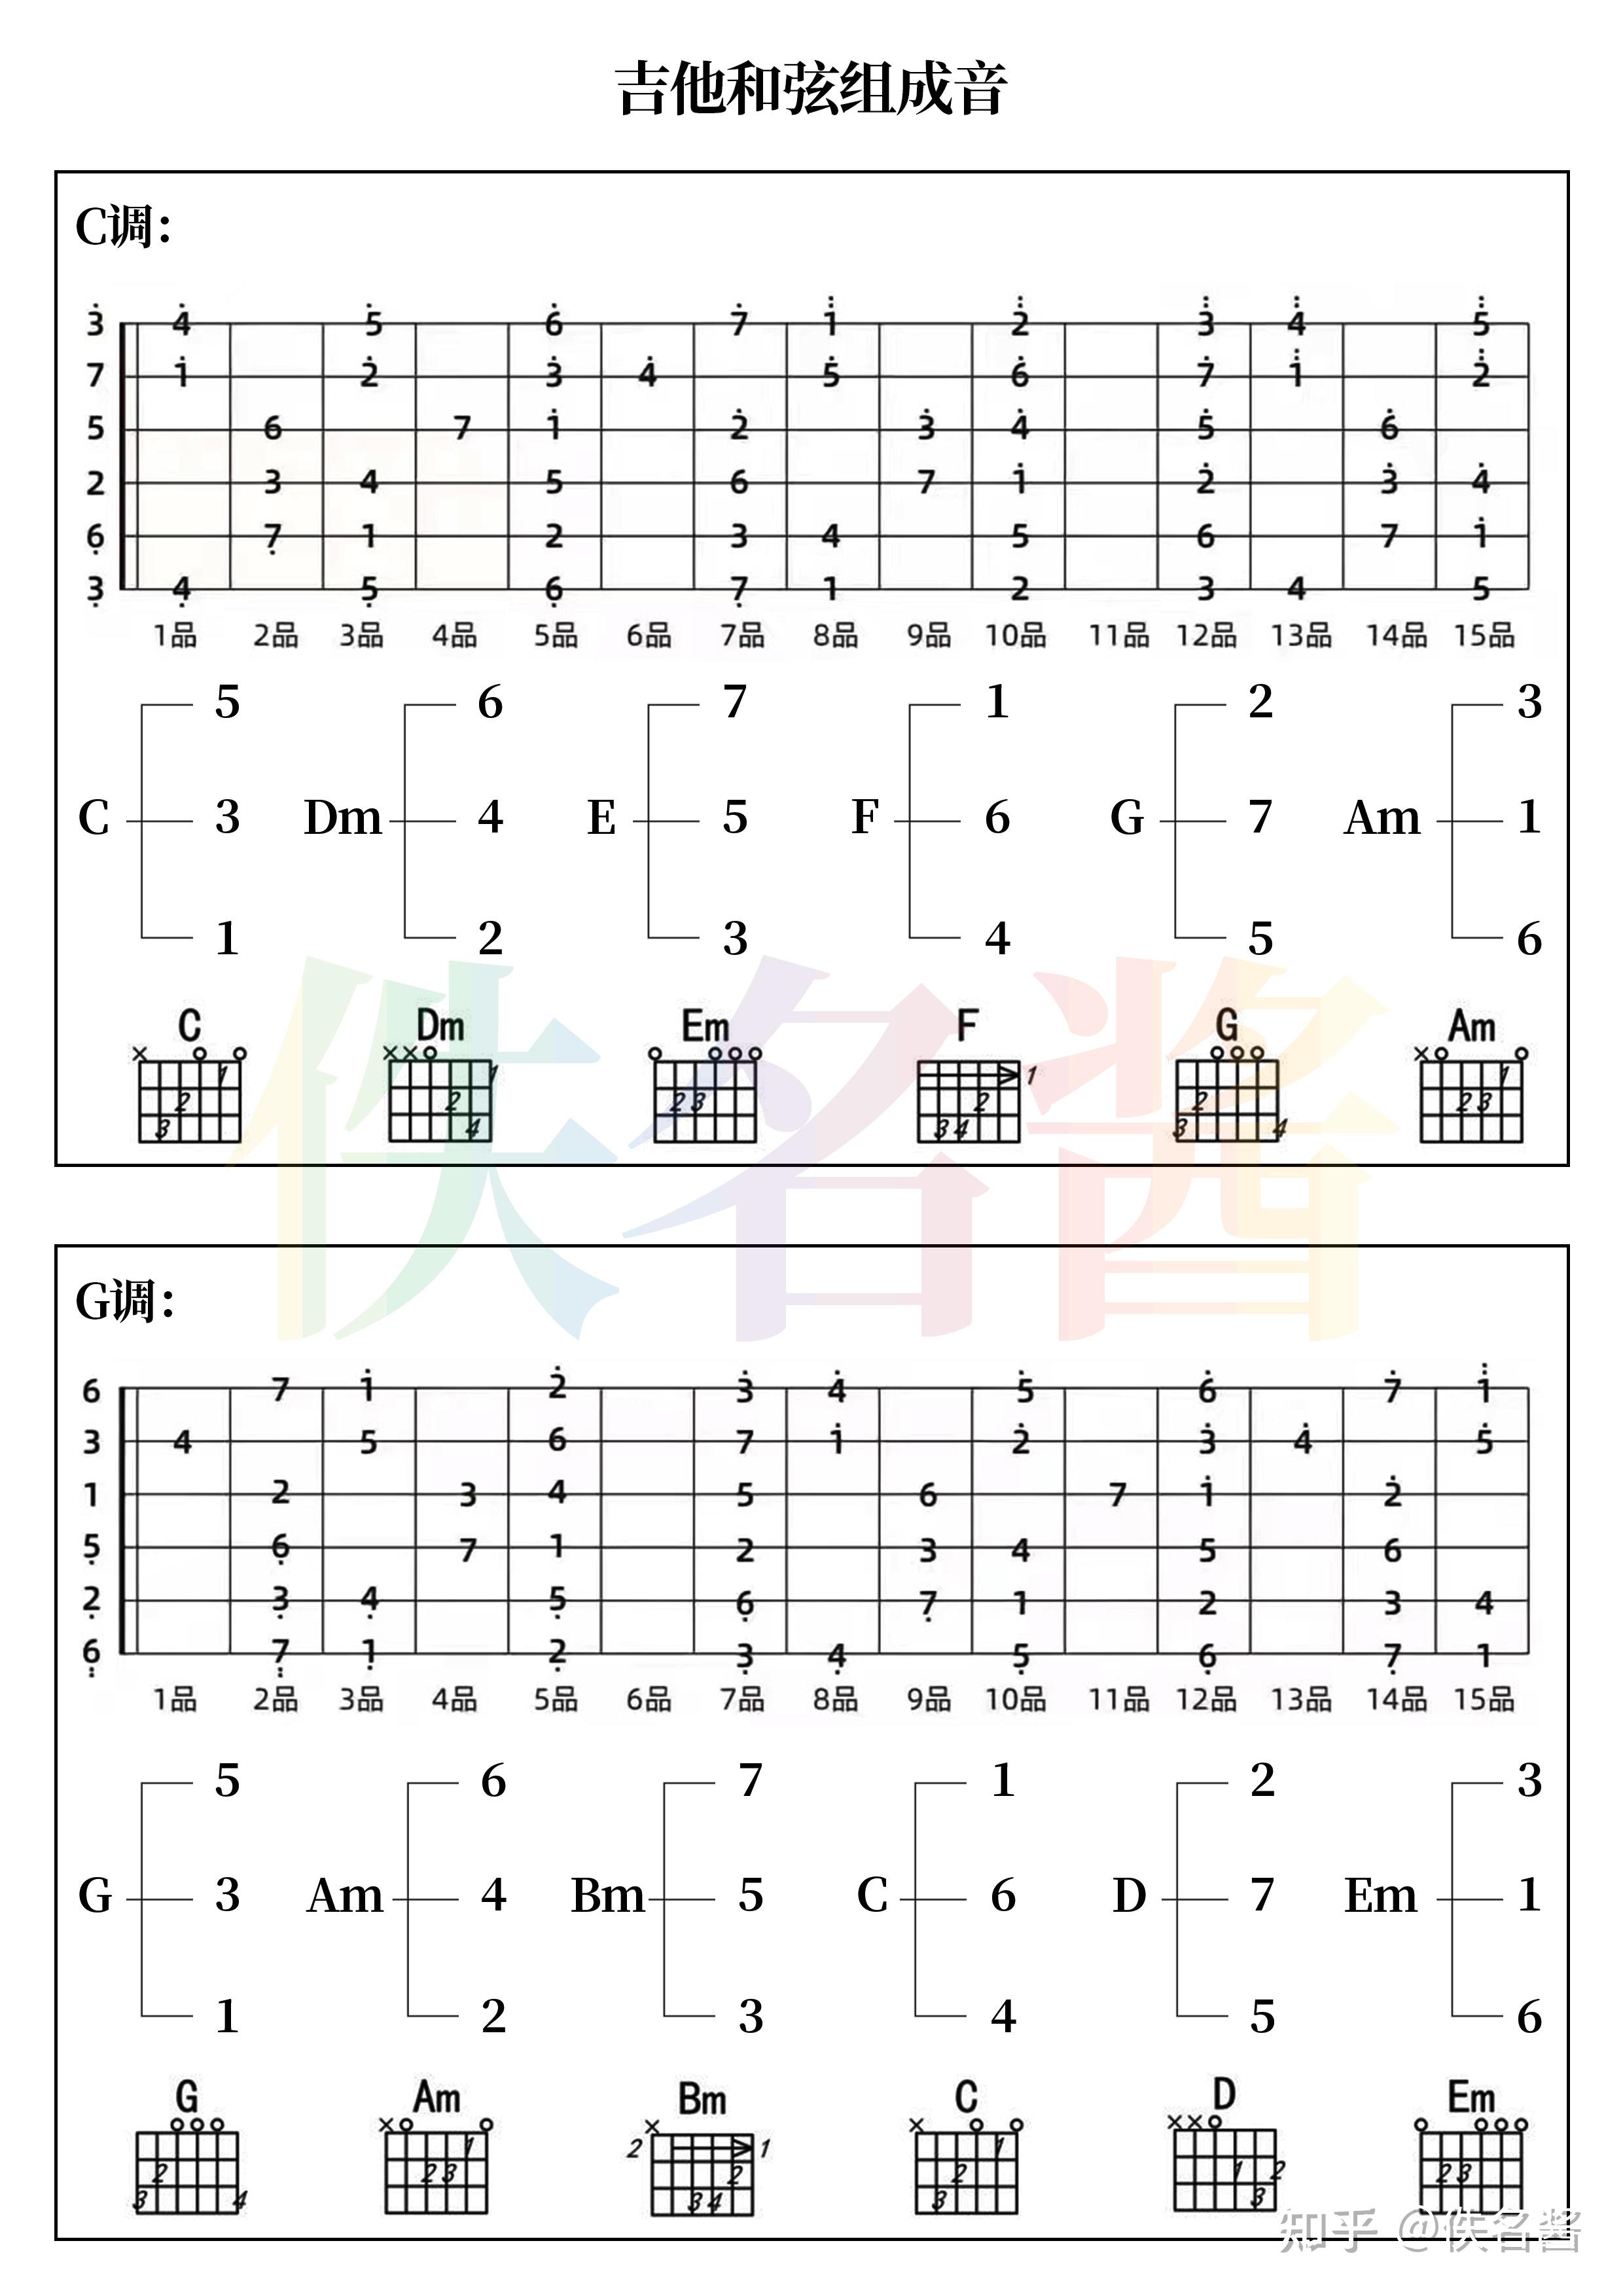 [吉他]吉他常用节奏型与和弦指法大全 - 吉他和弦指法图 - 吉他之家